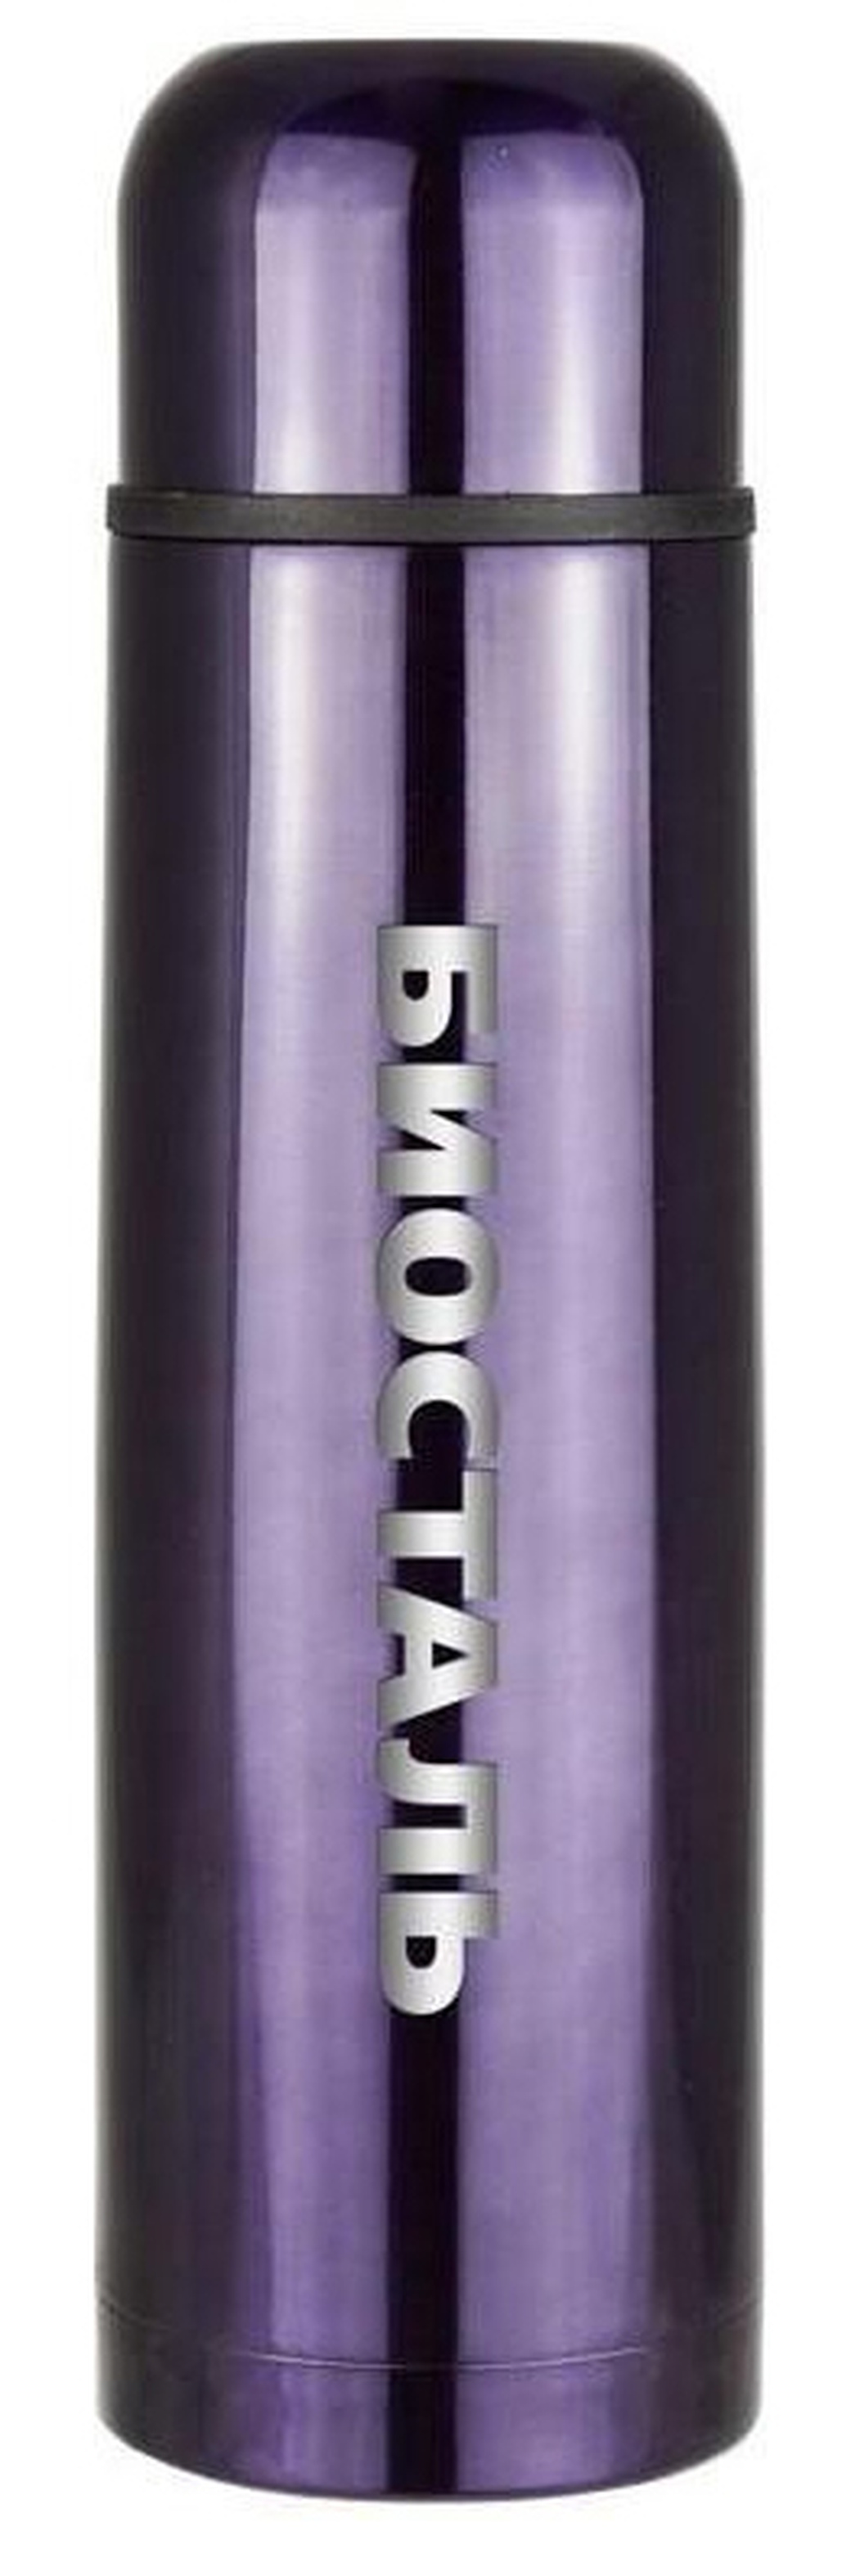 Термос Biostal (0,5 литра), фиолетовый фото